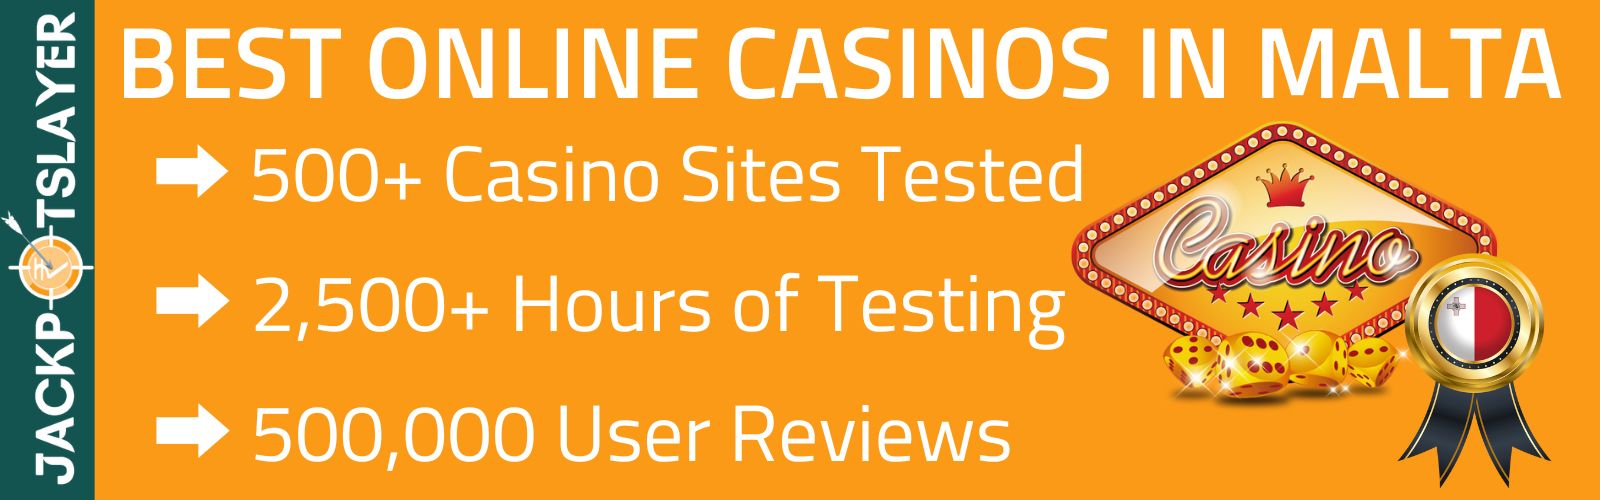 Best Online Casinos Malta